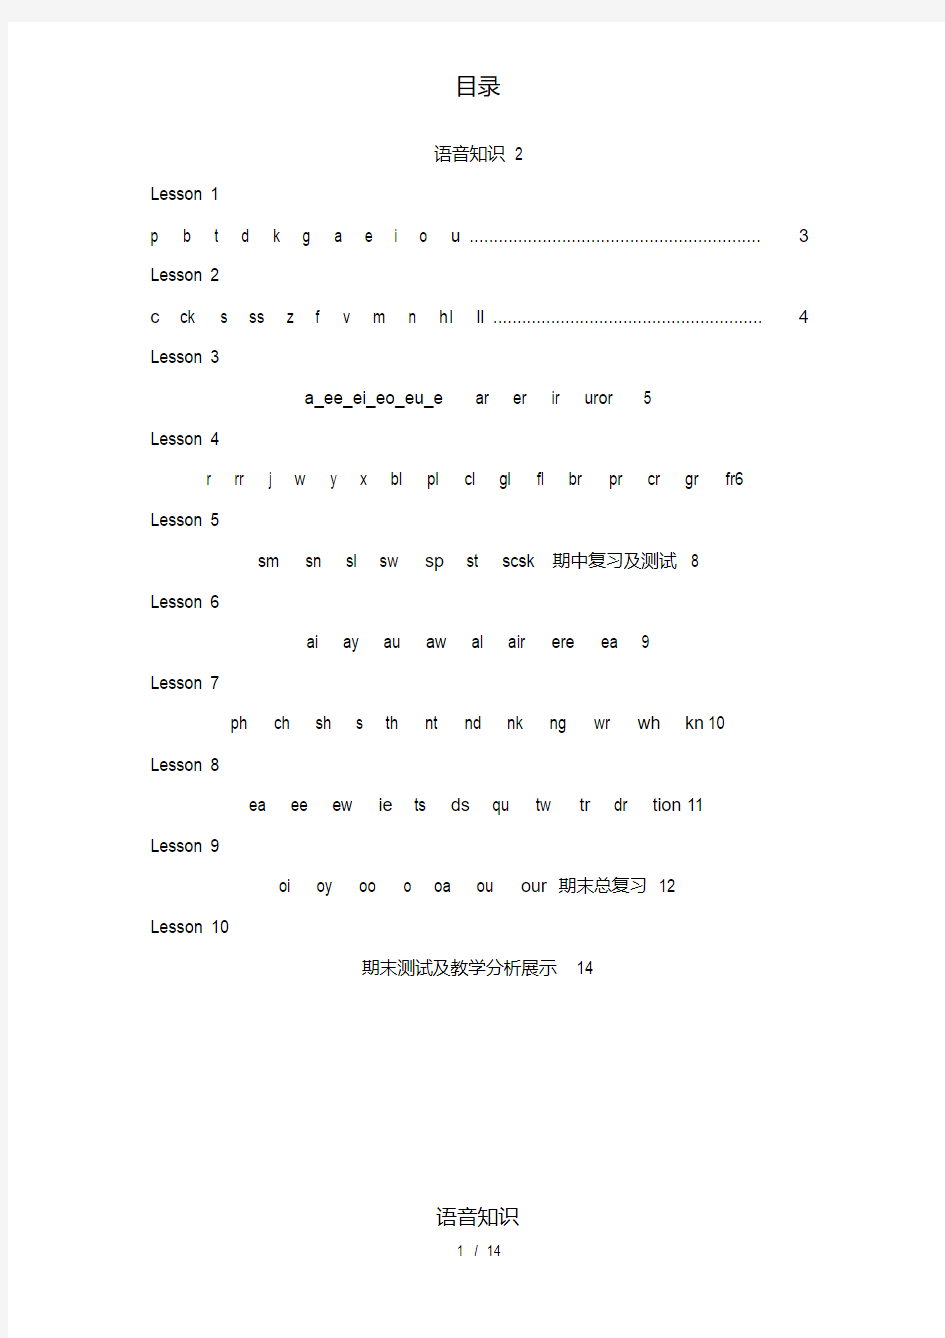 小学英语(自然拼读与国际音标)讲义.pdf